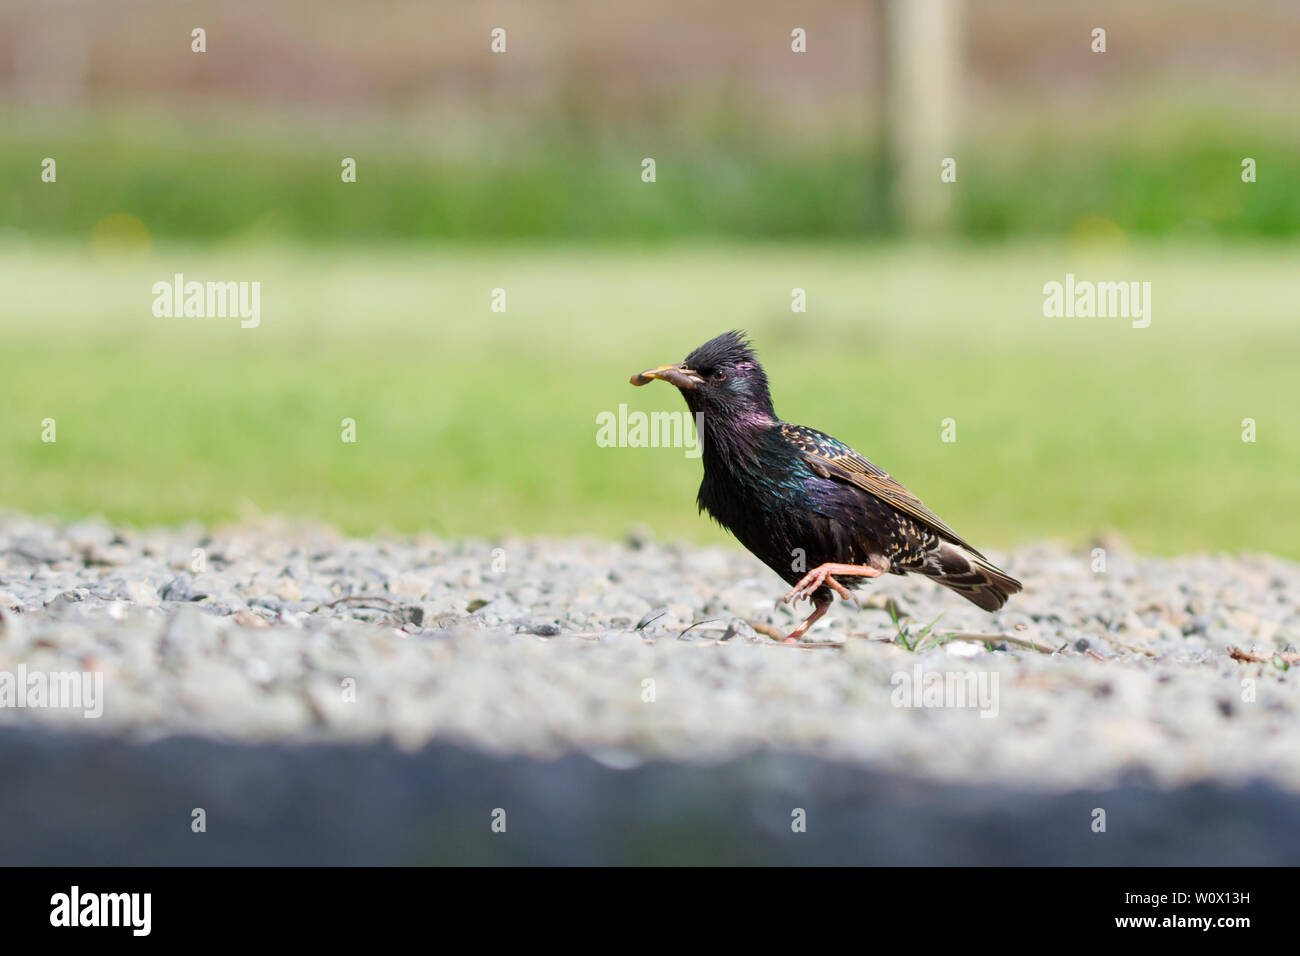 Starling camminando con grub in bocca Foto Stock